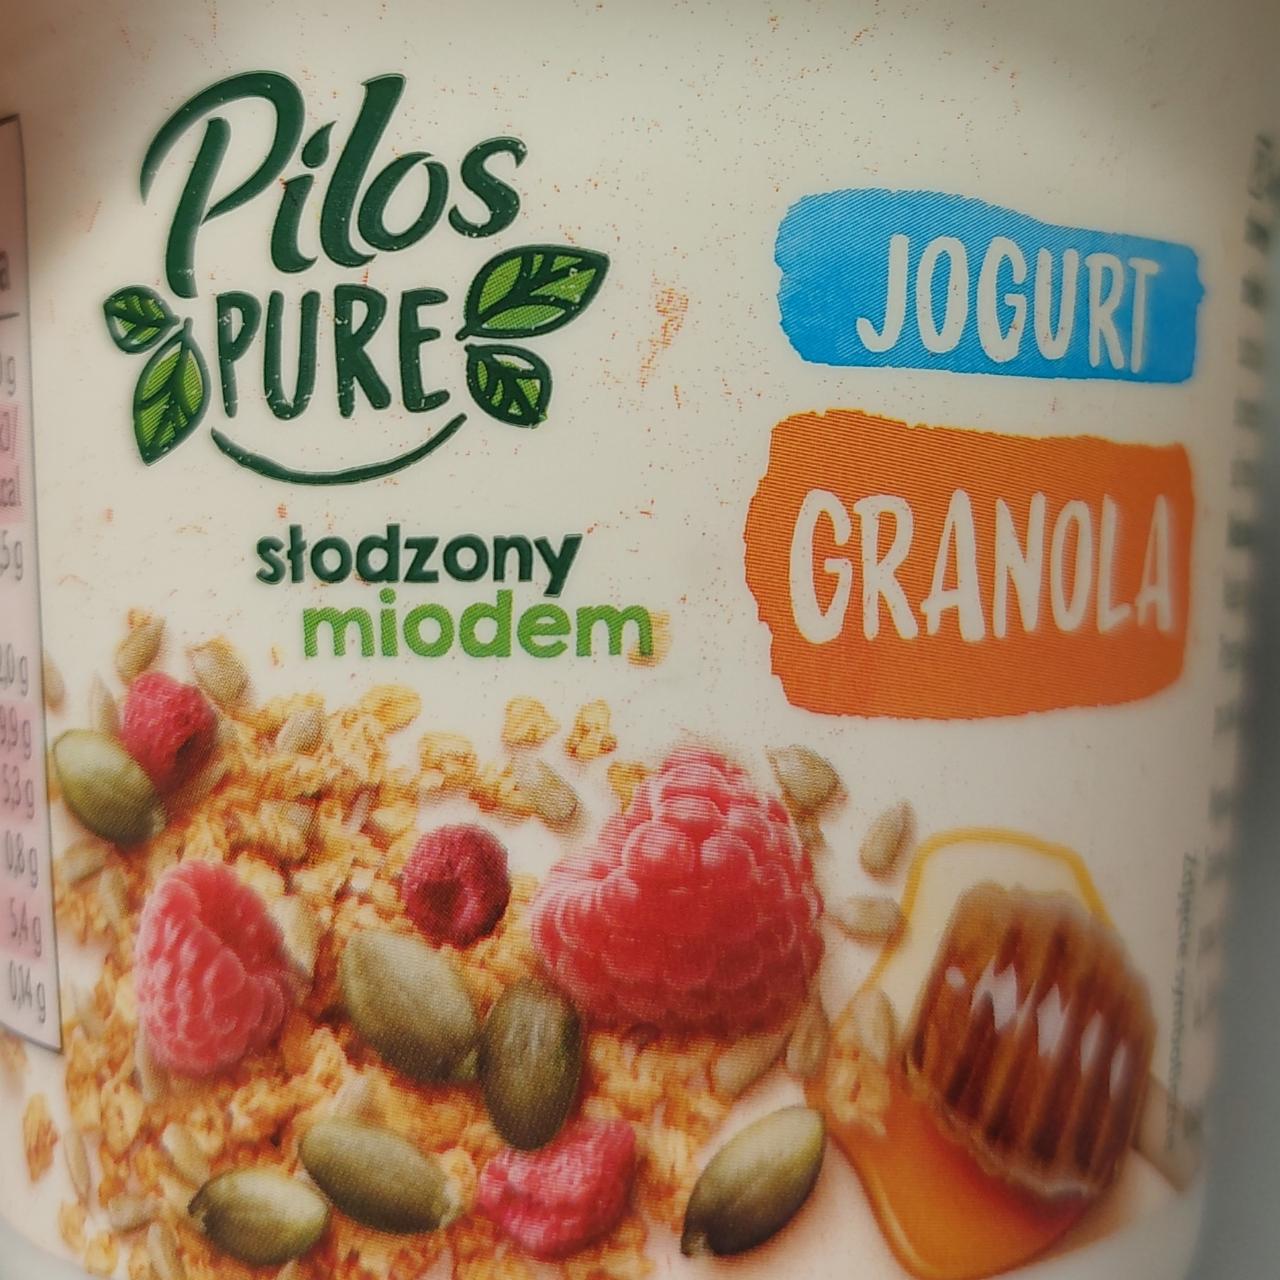 Zdjęcia - Jogurt granola słodzony miodem Pilos Pure